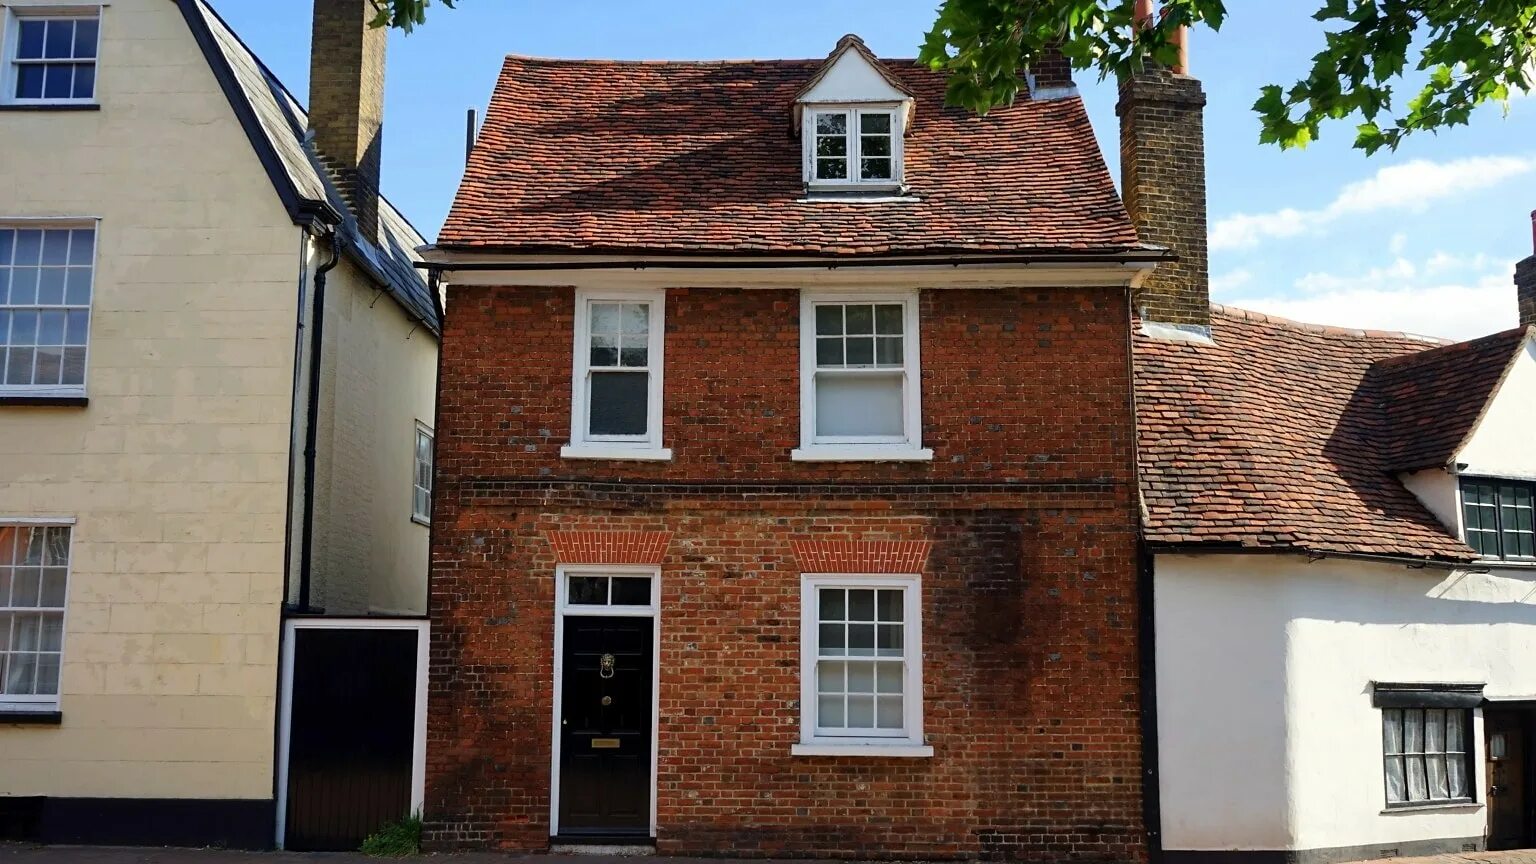 Terraced Houses в Англии. Крыши домов в Британии. Крыши домов в Бирмингеме. Старый дом в Англии.